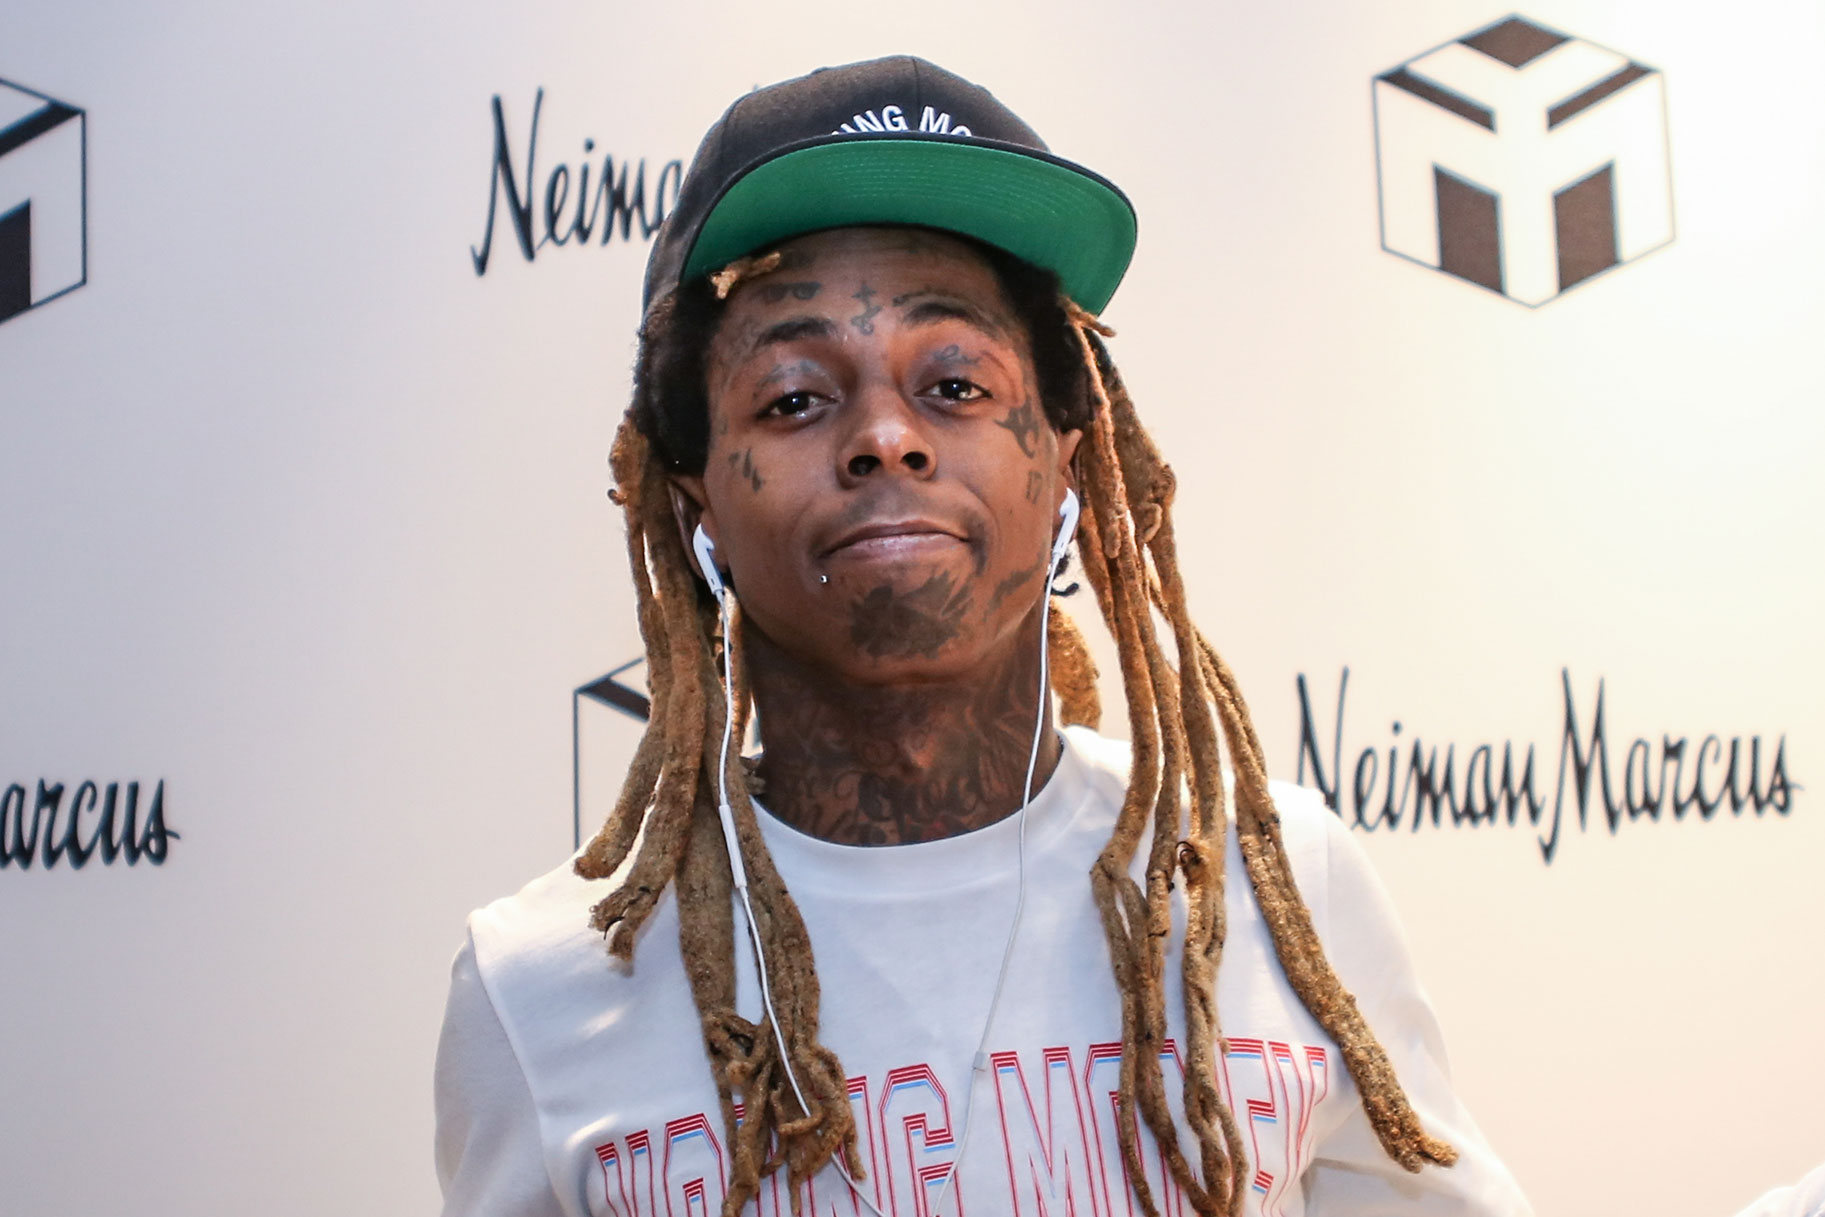 Lil Wayne väidab end süüdi ebaseadusliku, kullatud relva eralennukile viimises